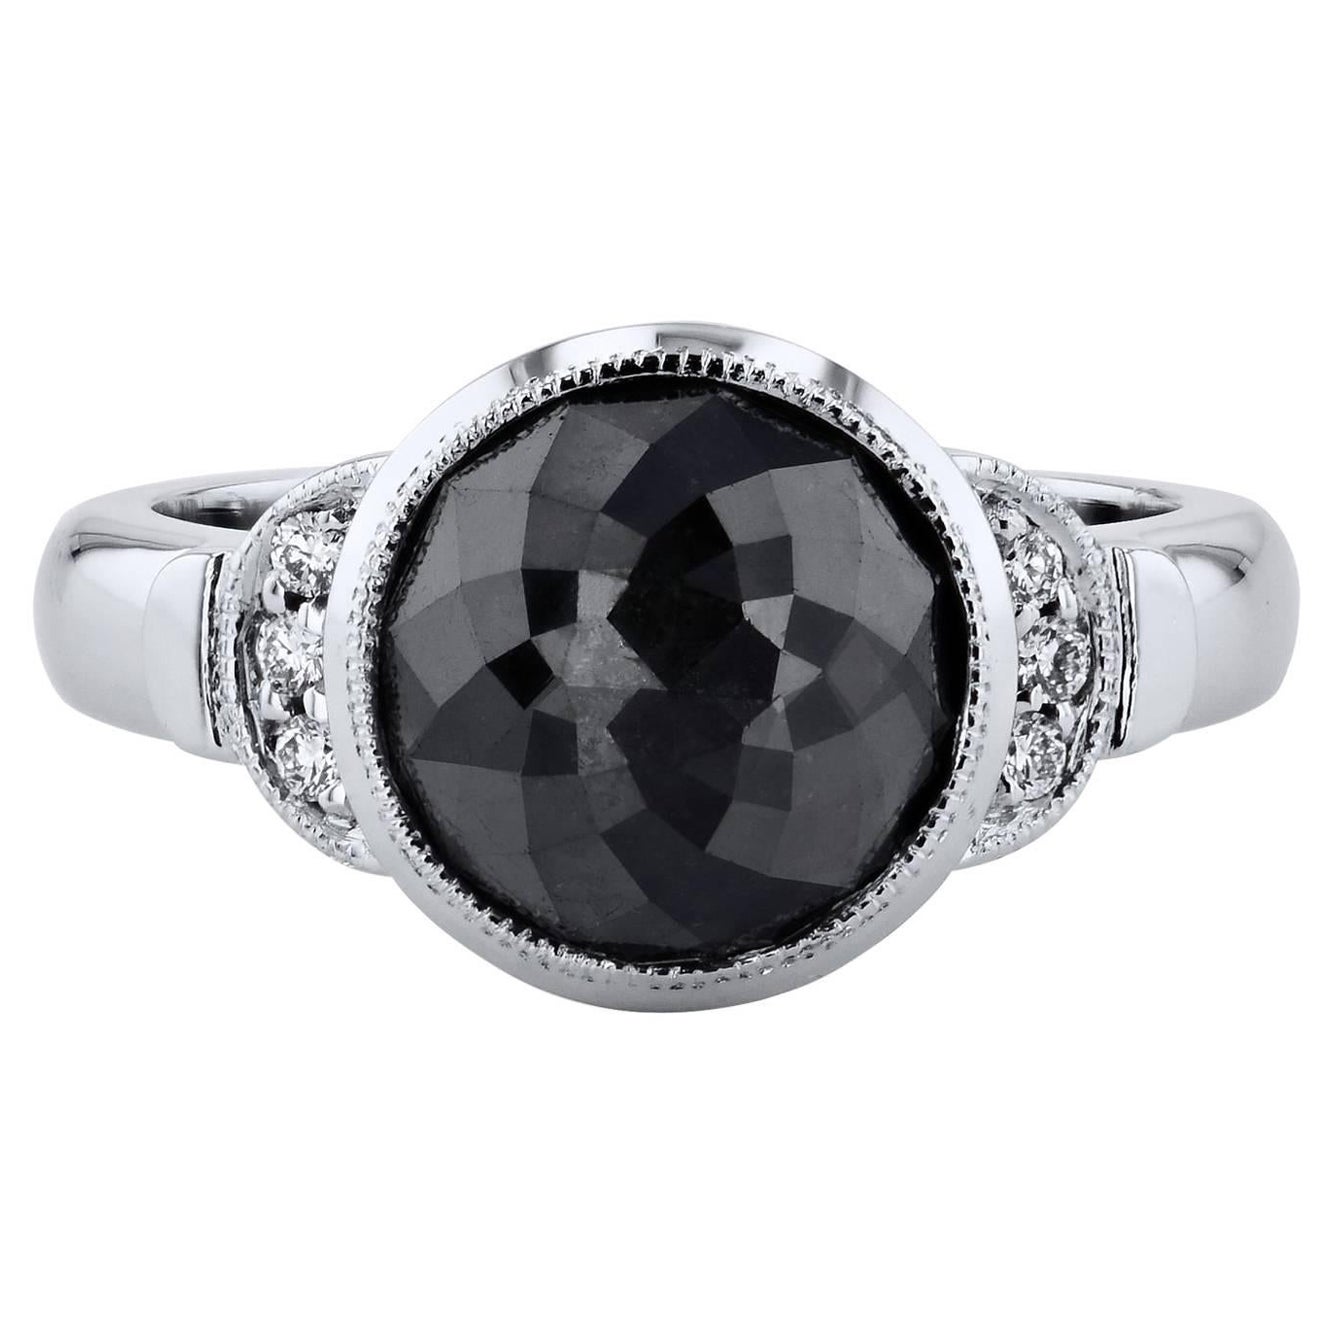 Handgefertigter Ring mit 4 Karat schwarzen Diamanten im Rosenschliff in Lünette 